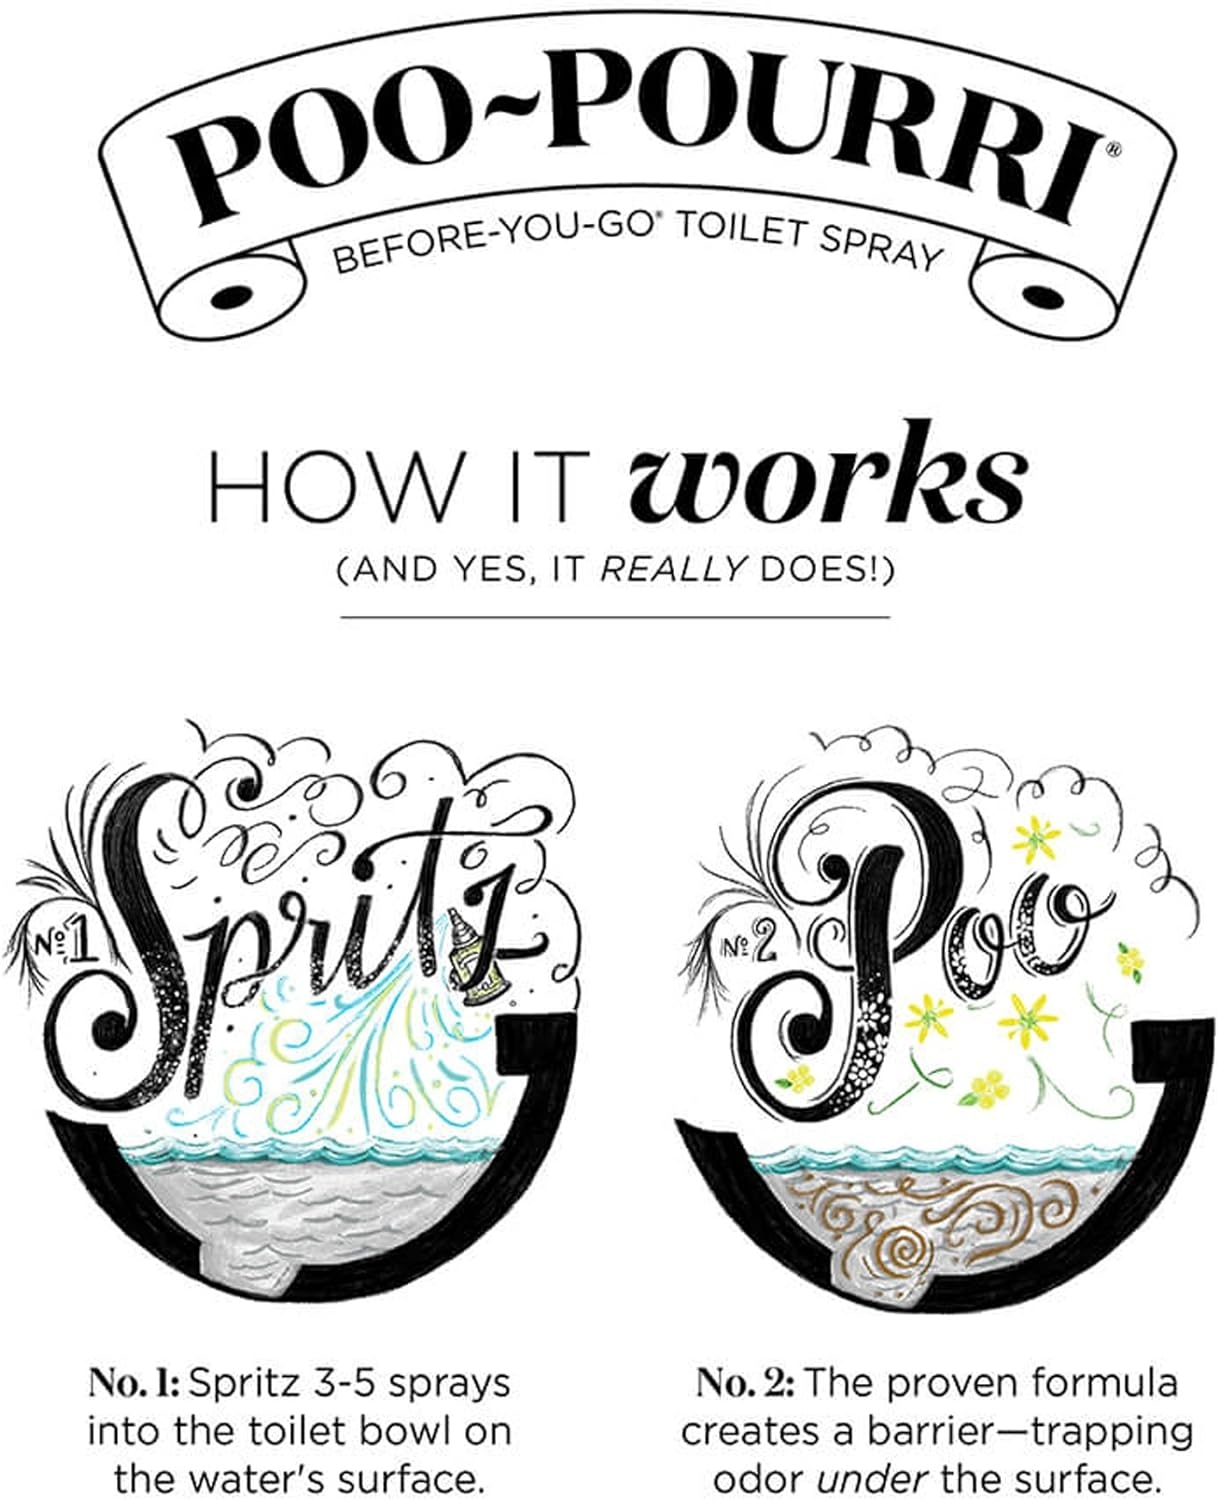 Poo-Pourri Before-You- go Toilet Spray, 2 Oz, Trap-A-Crap, 2 Fl Oz